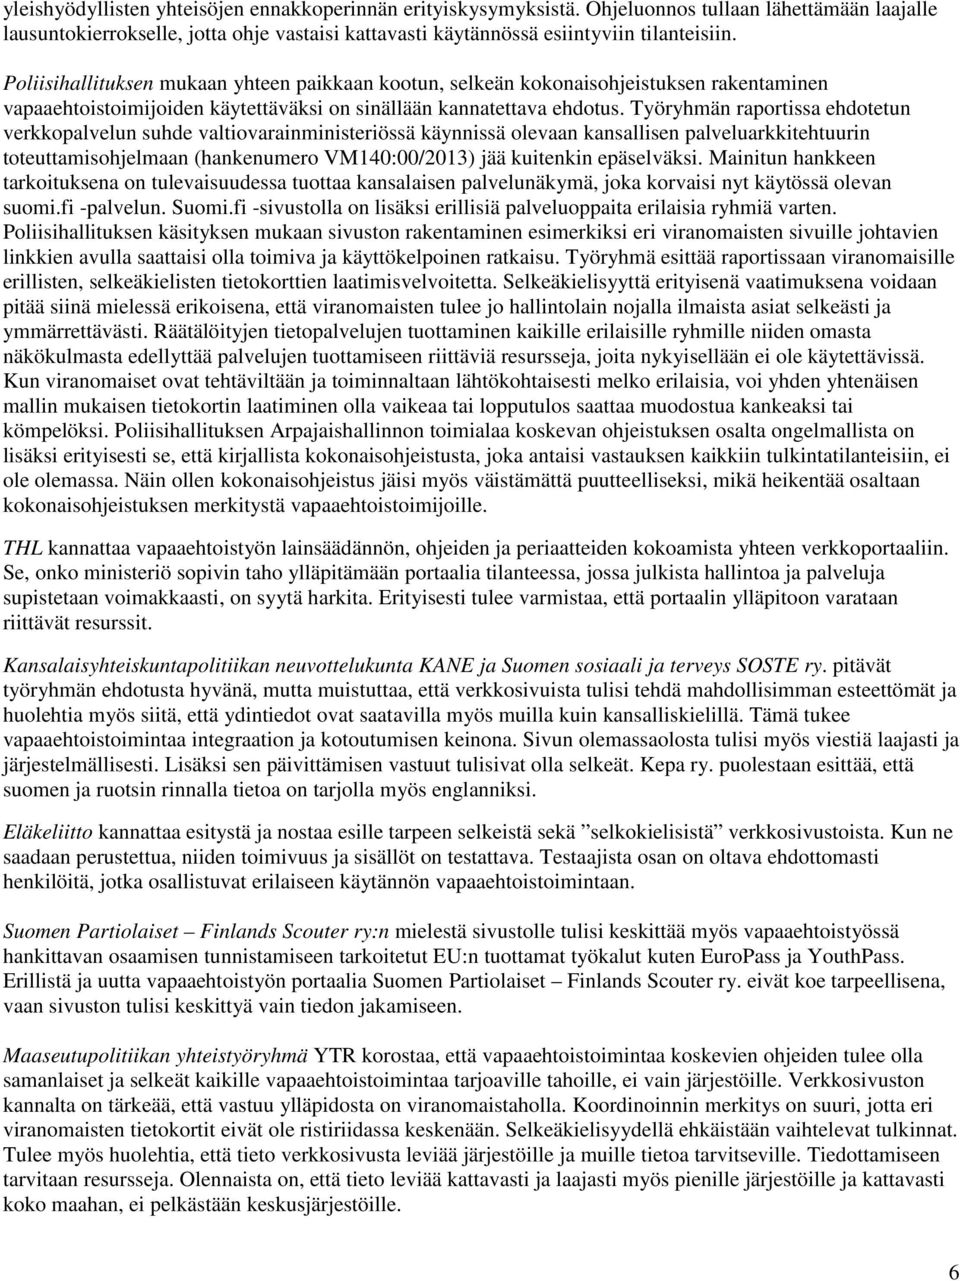 Työryhmän raportissa ehdotetun verkkopalvelun suhde valtiovarainministeriössä käynnissä olevaan kansallisen palveluarkkitehtuurin toteuttamisohjelmaan (hankenumero VM140:00/2013) jää kuitenkin